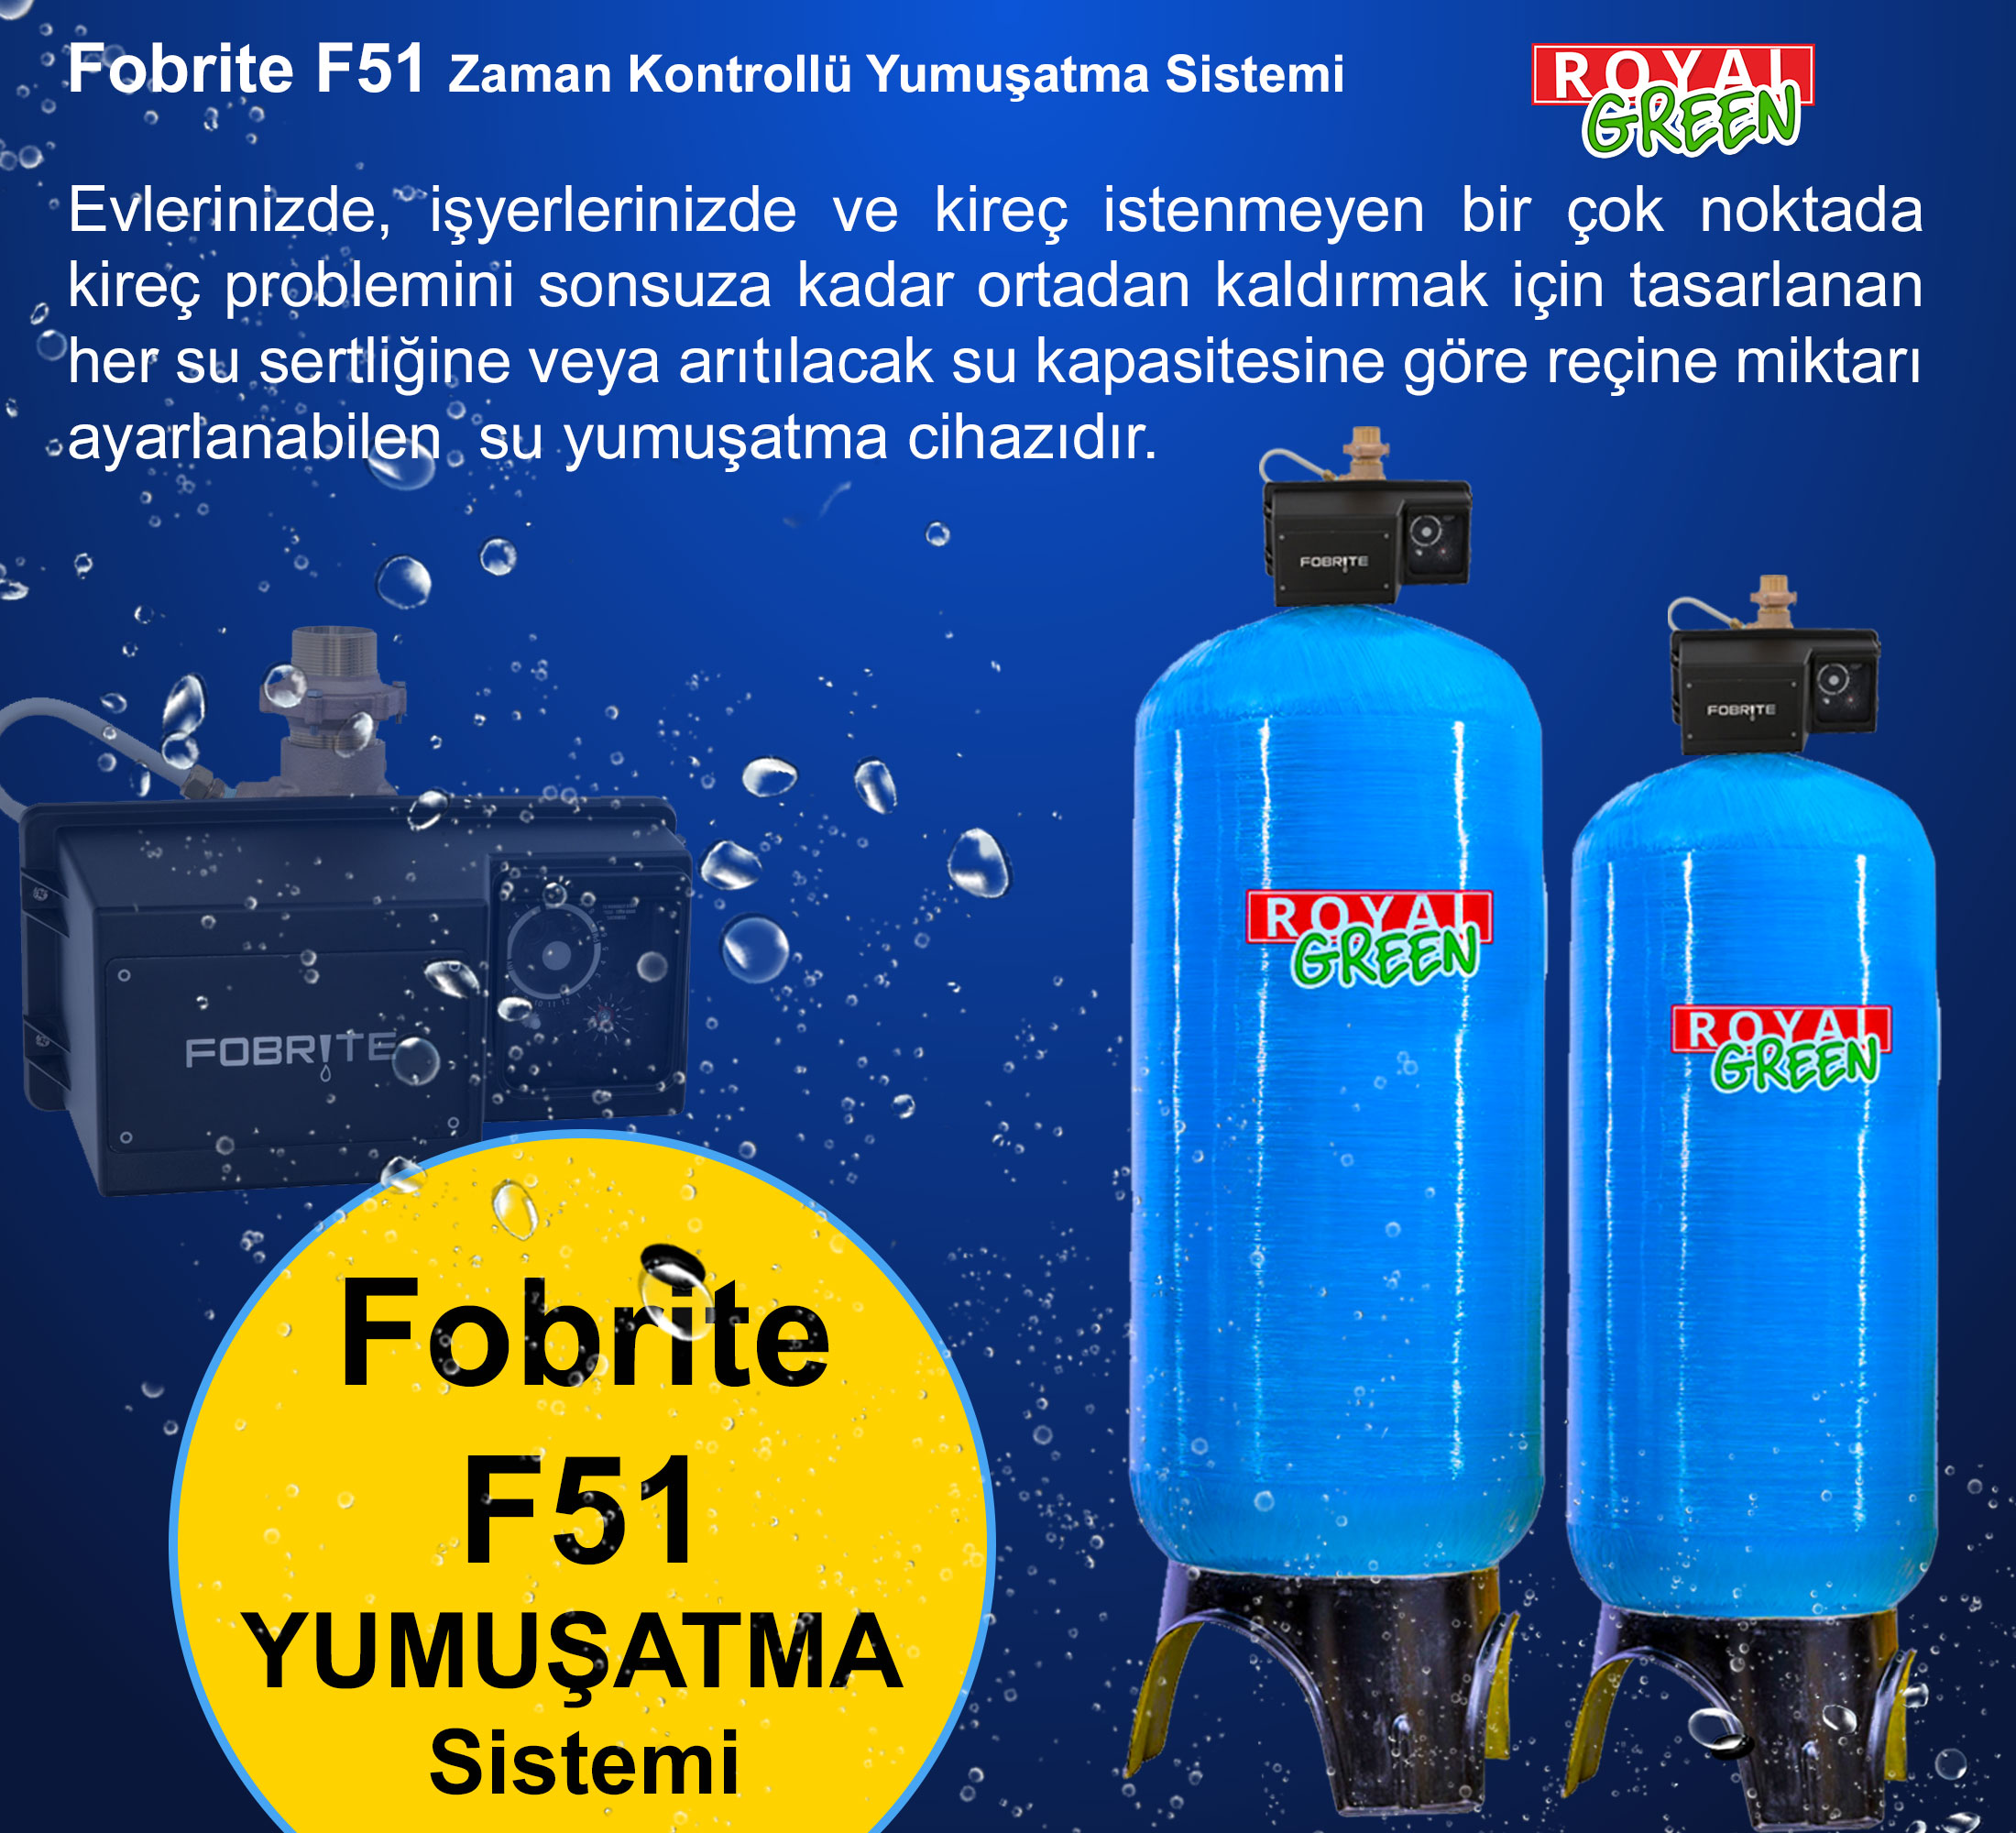 fobrite F51 yumusatma sistemi banner